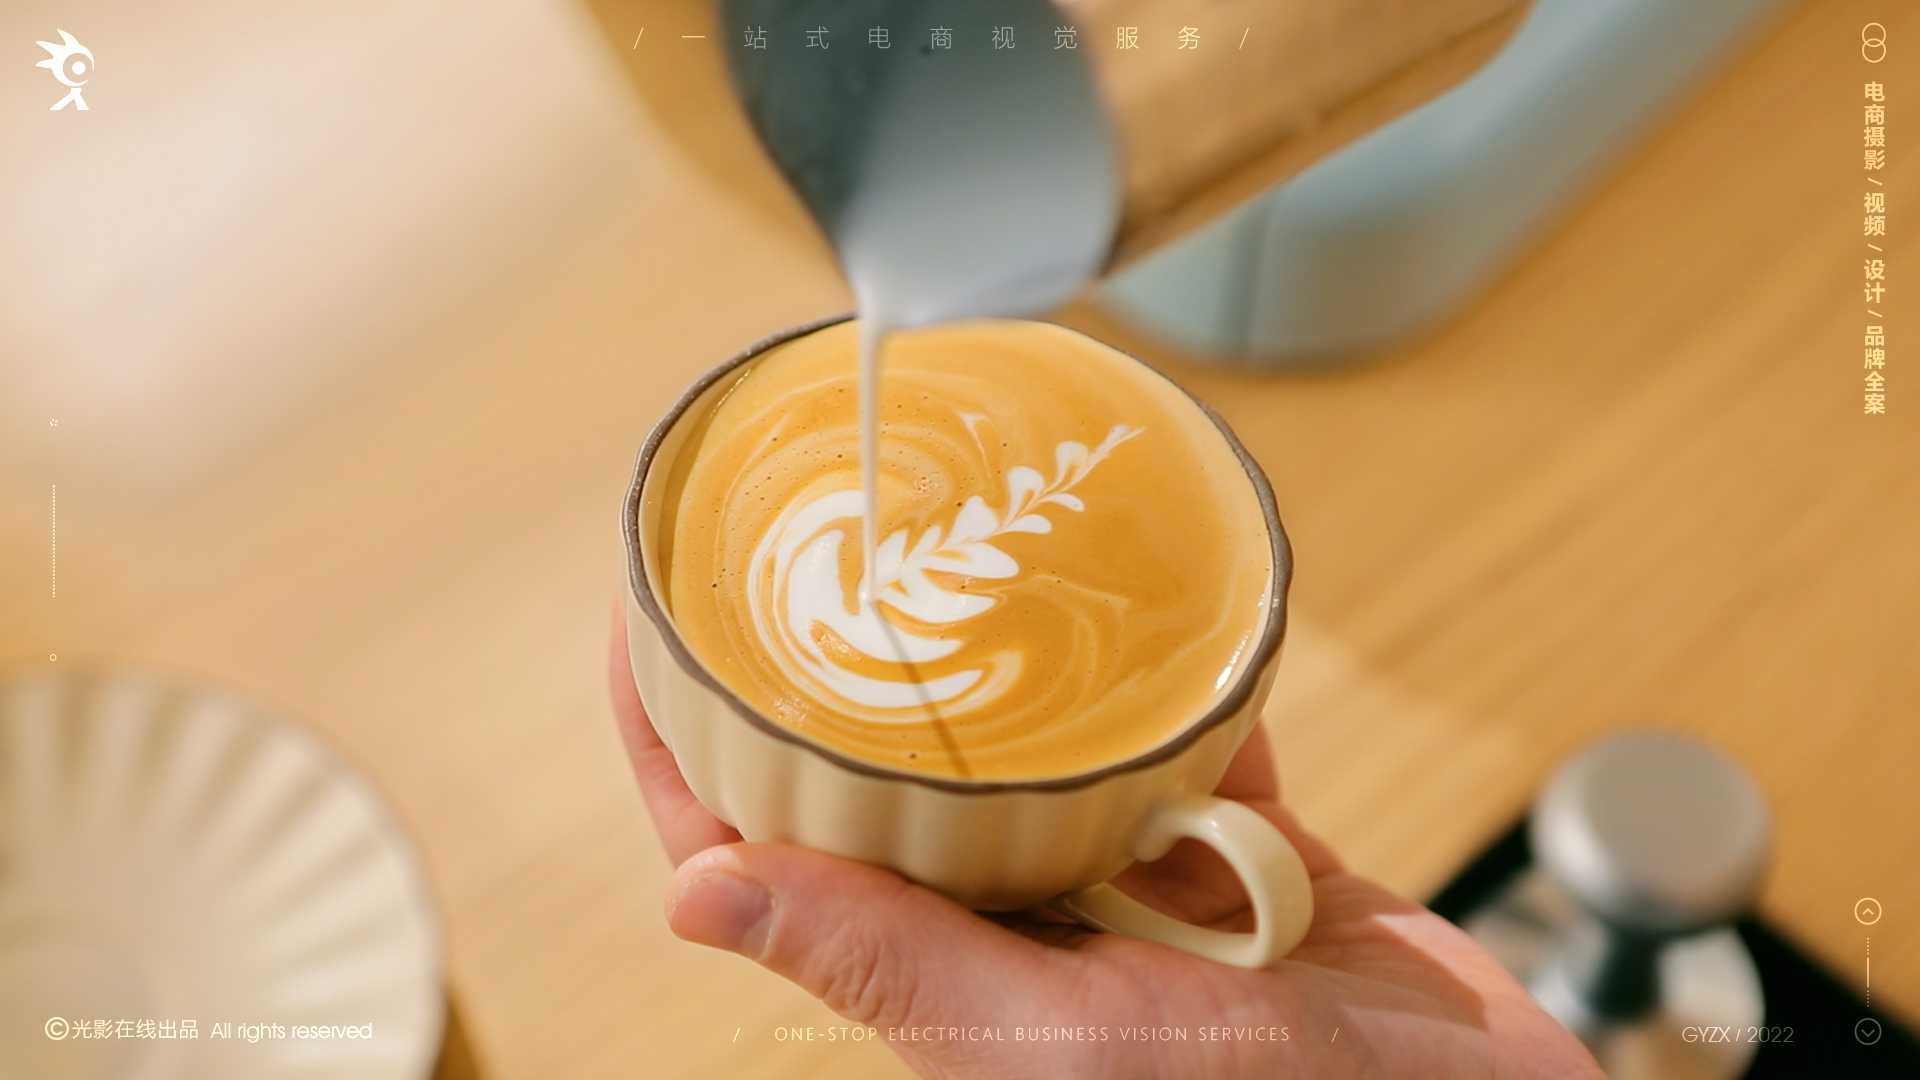 海氏C5意式咖啡机|咖啡机|奶泡机|磨豆机|双锅炉蒸气咖啡机